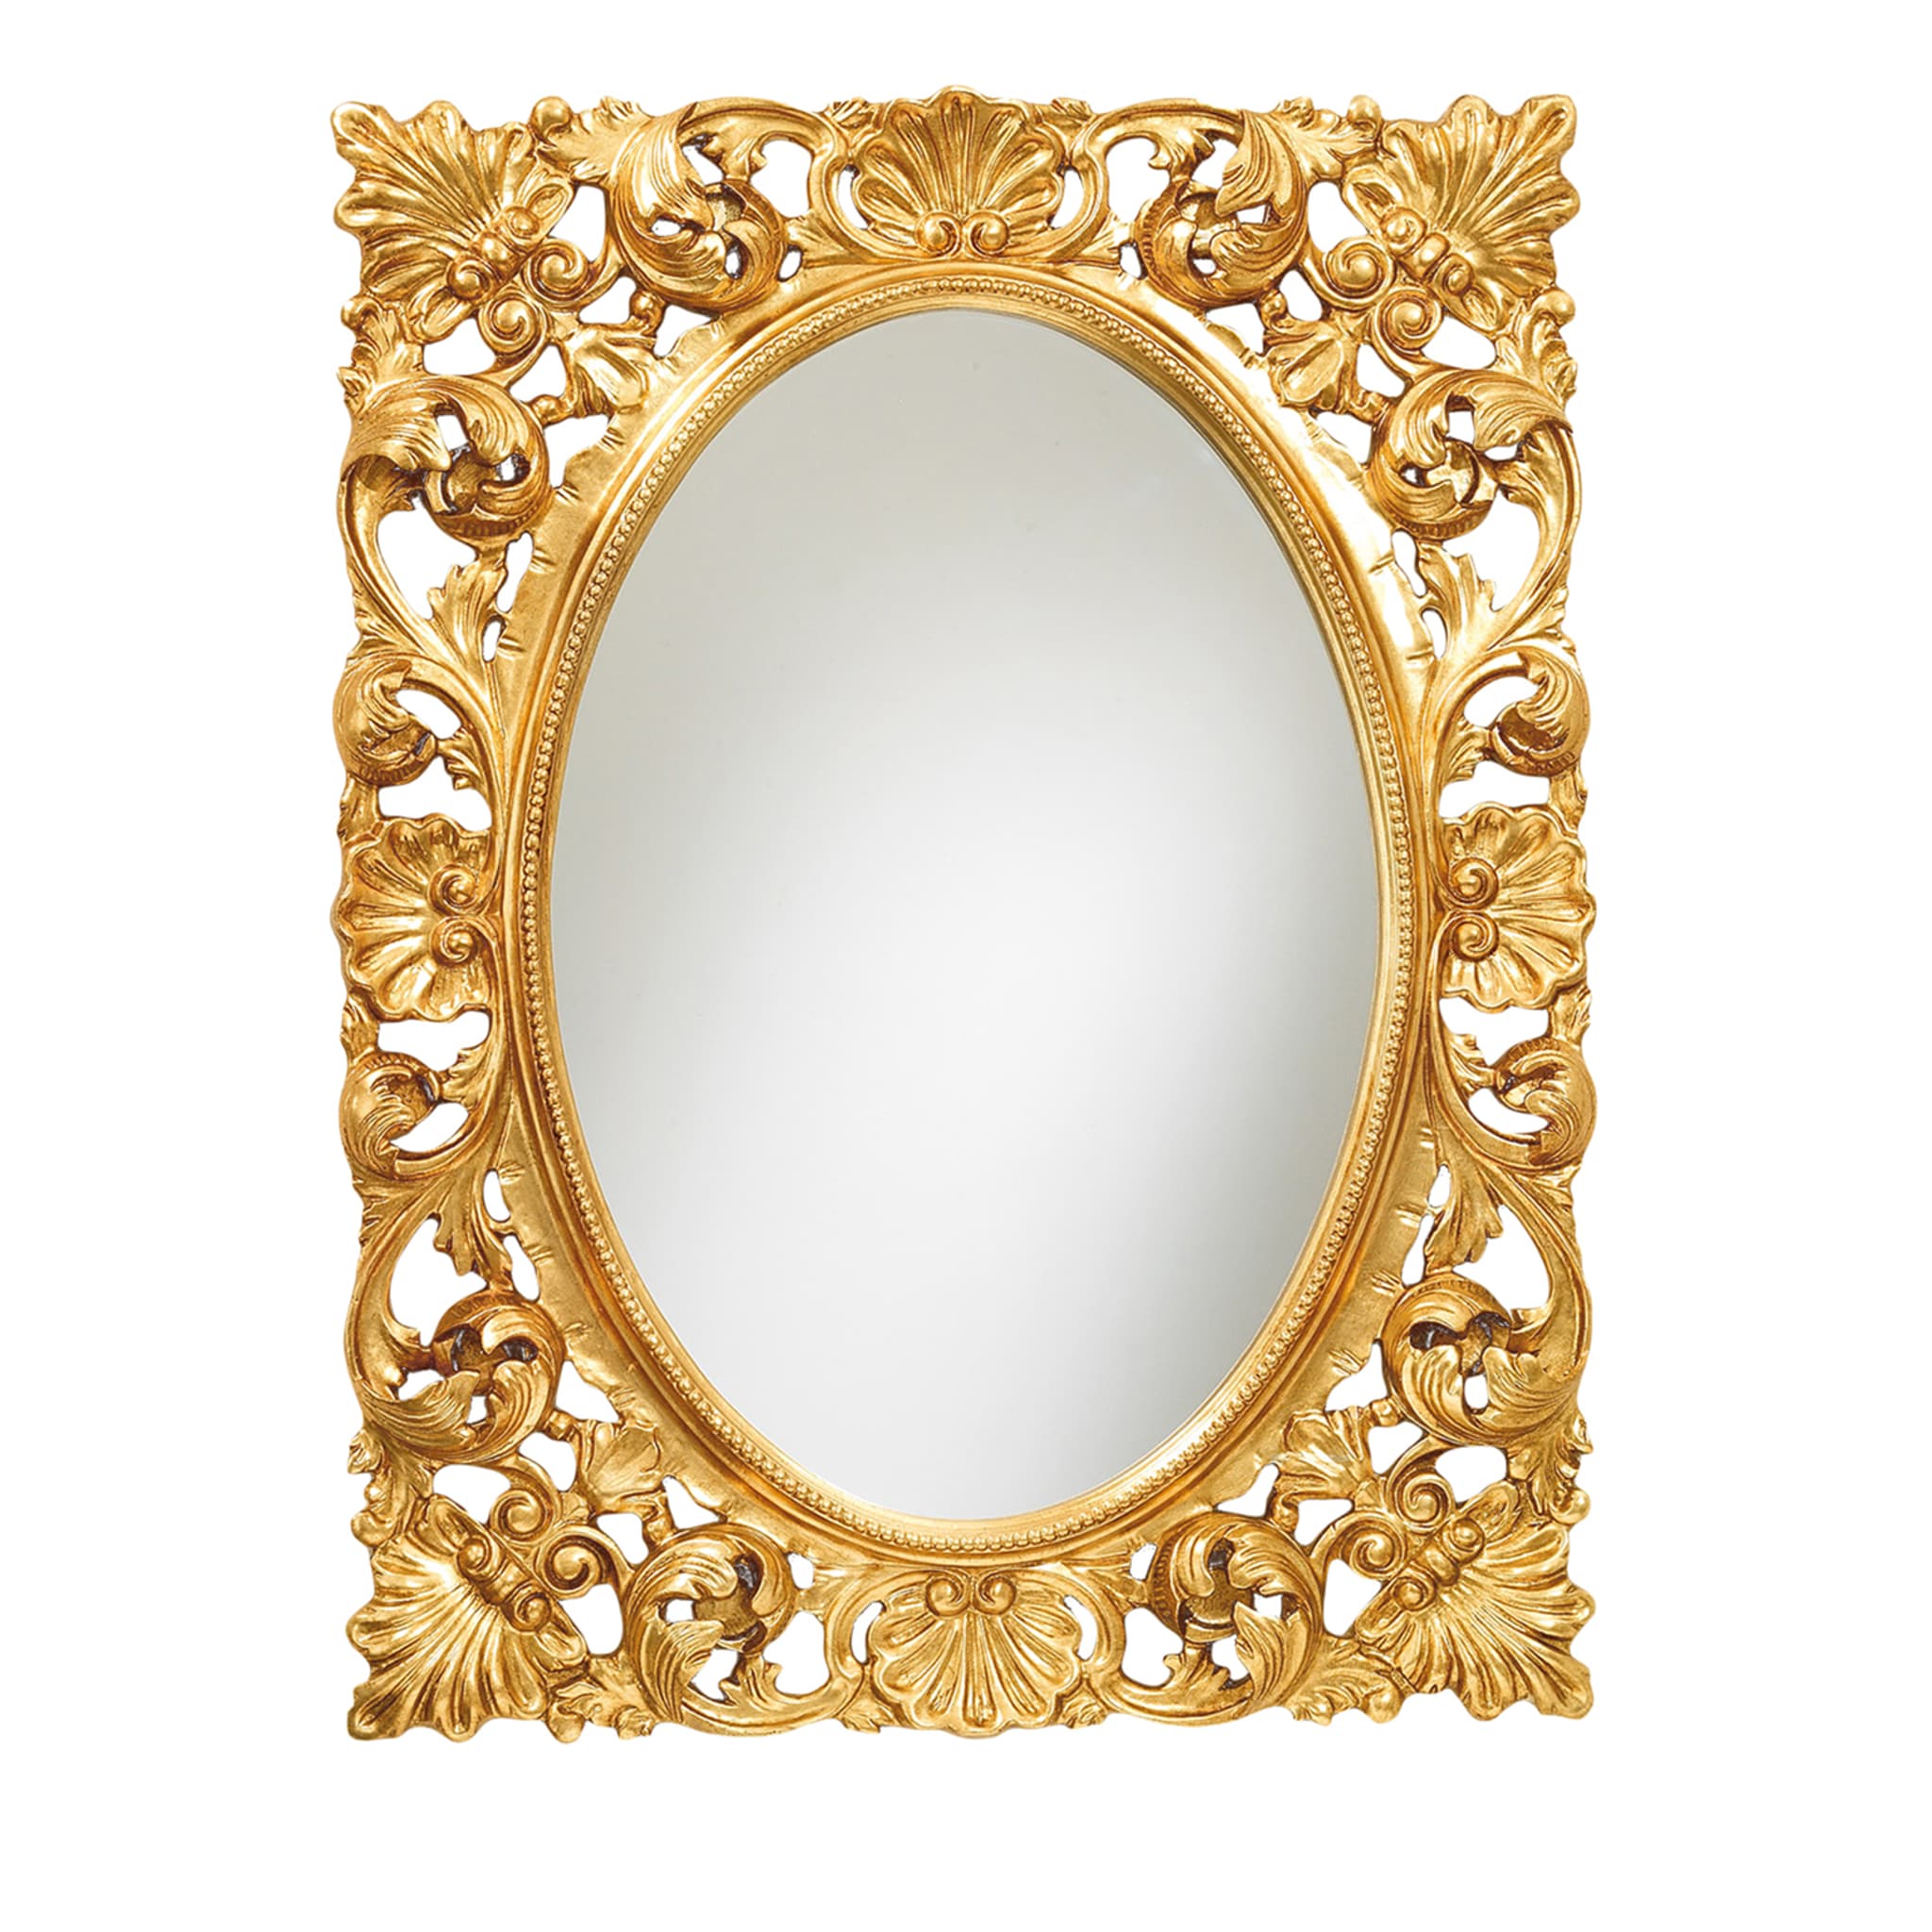 Artissimo Specchio da parete barocco, 57 x 33 cm, motivo: angelo, avorio oro,  cornice anticata, stile Art Nouveau, colore oro avorio 022 : :  Casa e cucina